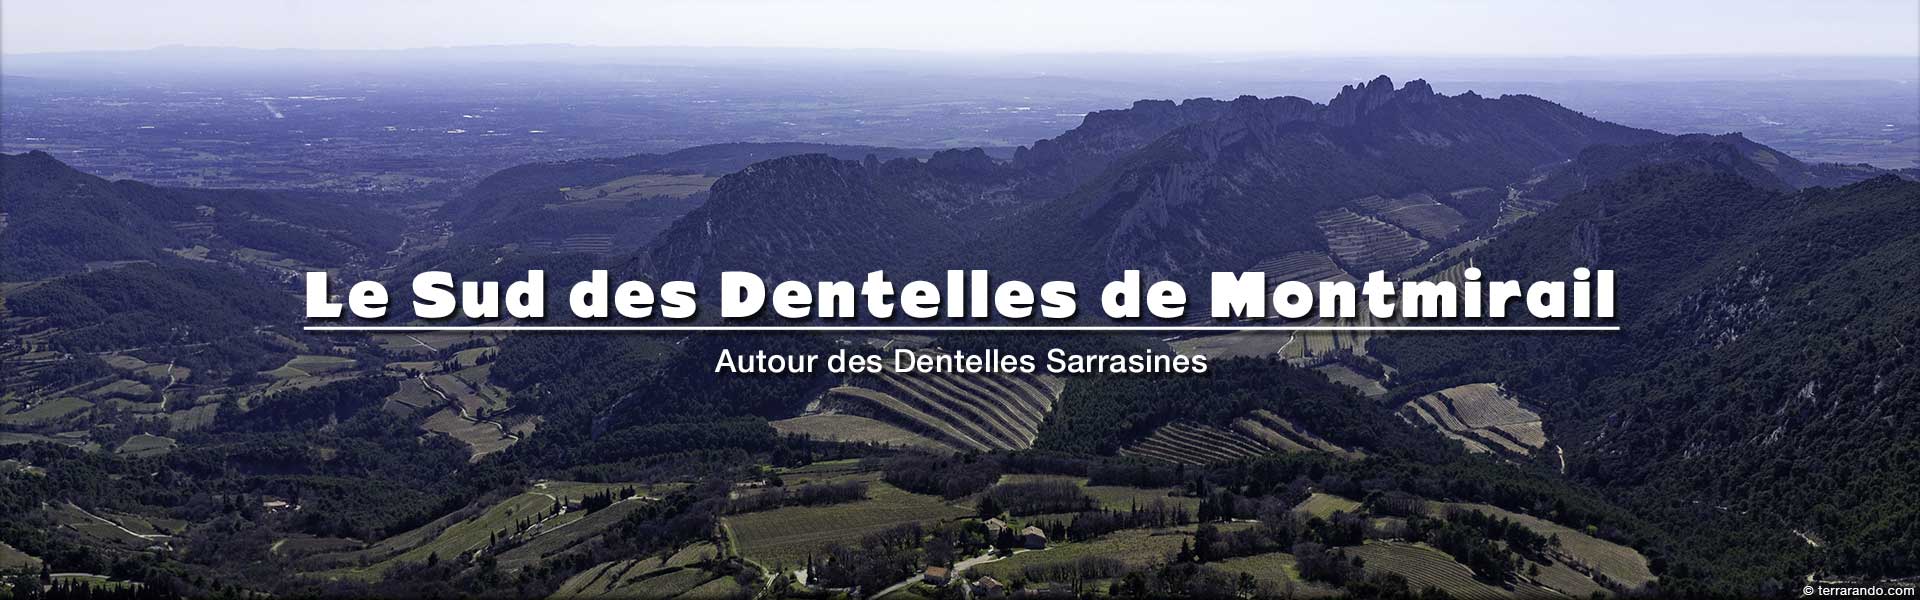 week-end randonnées le Sud des Dentelles de Montmirail en Vaucluse